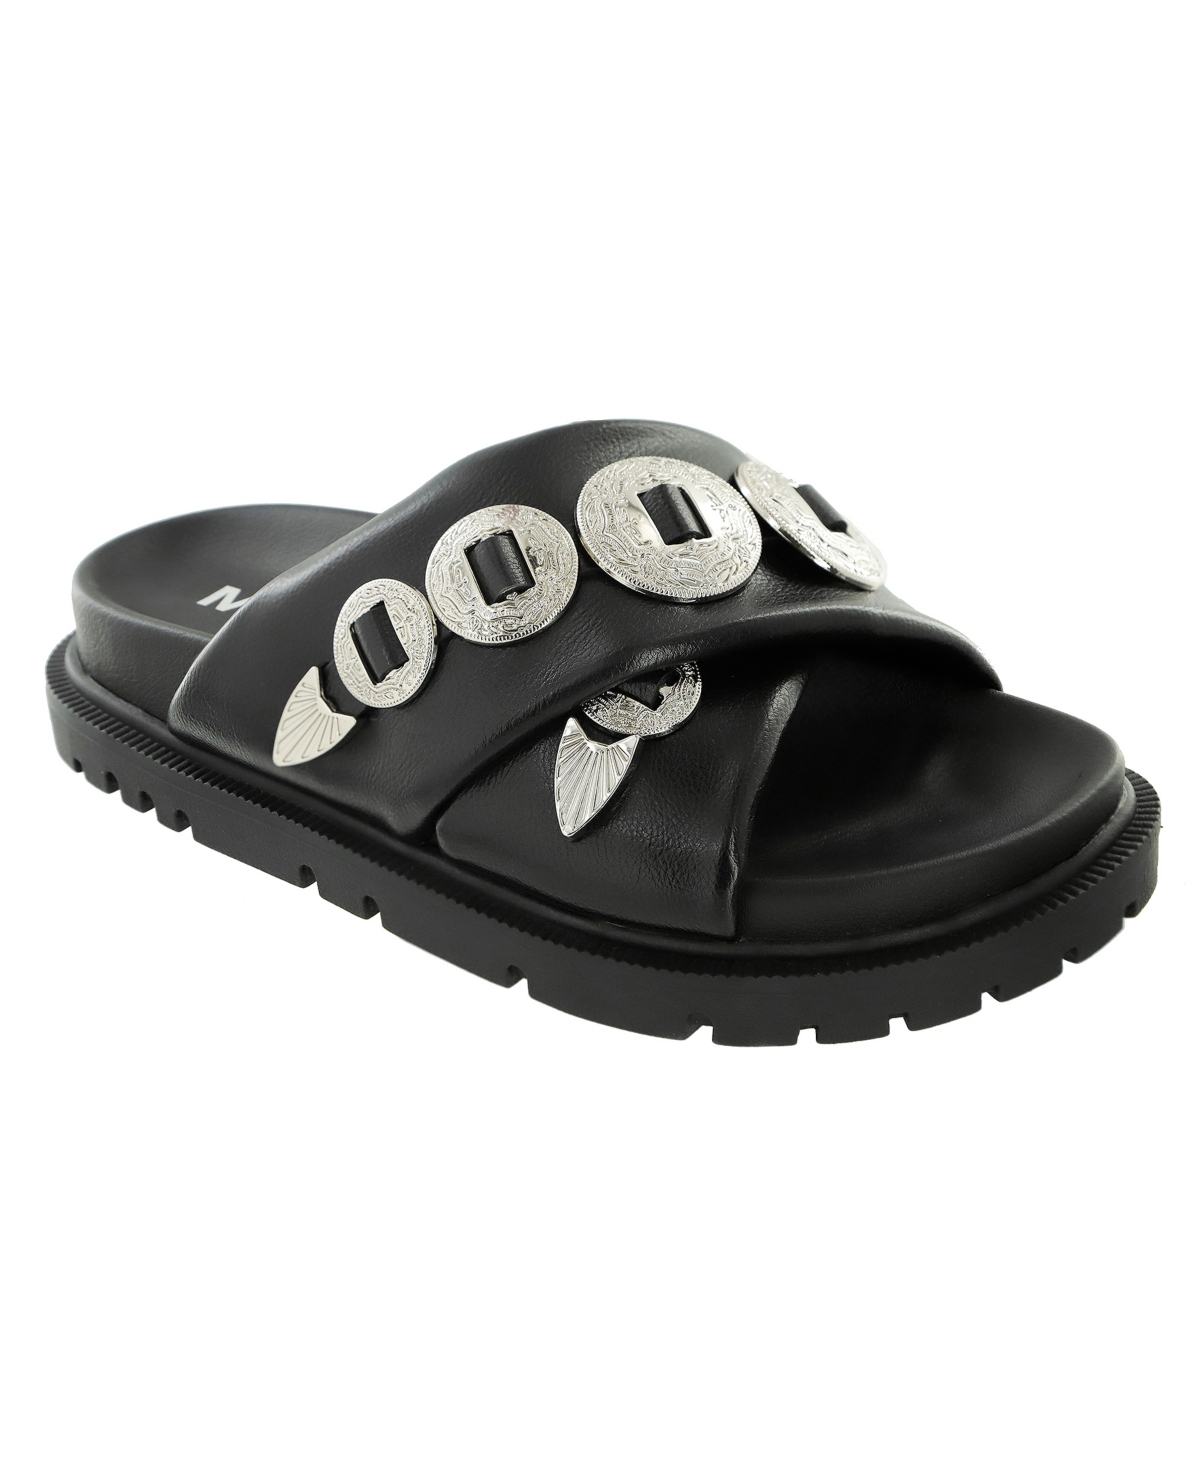 Women's Gorgene Slip-On Flat Sandals - Black